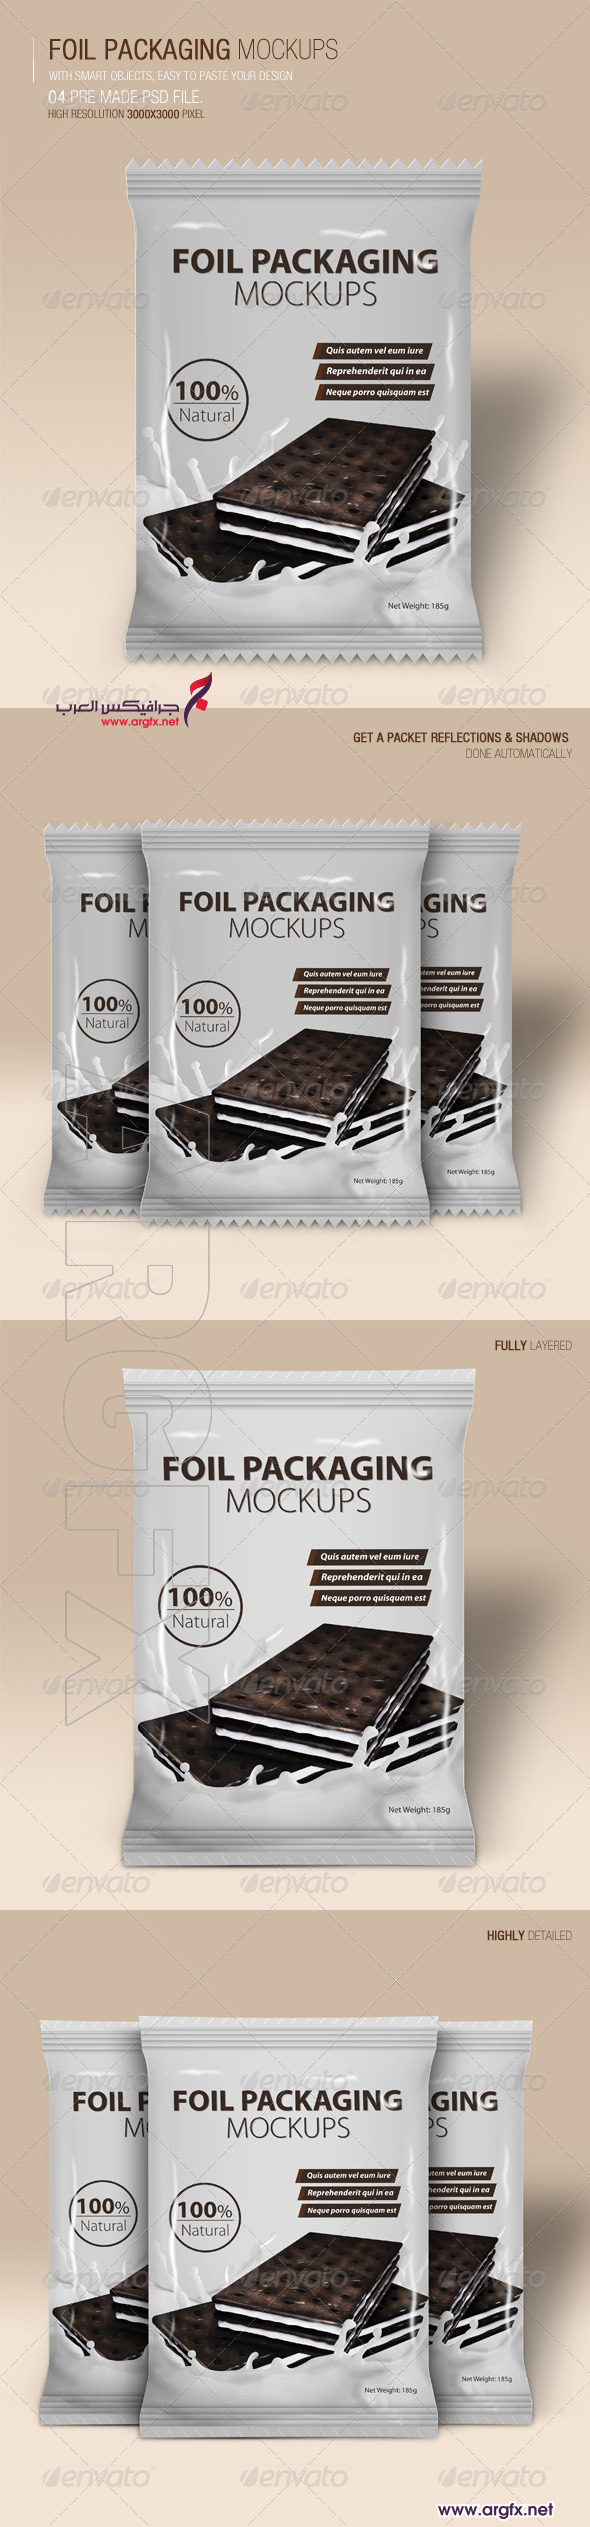 GR - Foil Packaging Mockups Vol.2 6593106